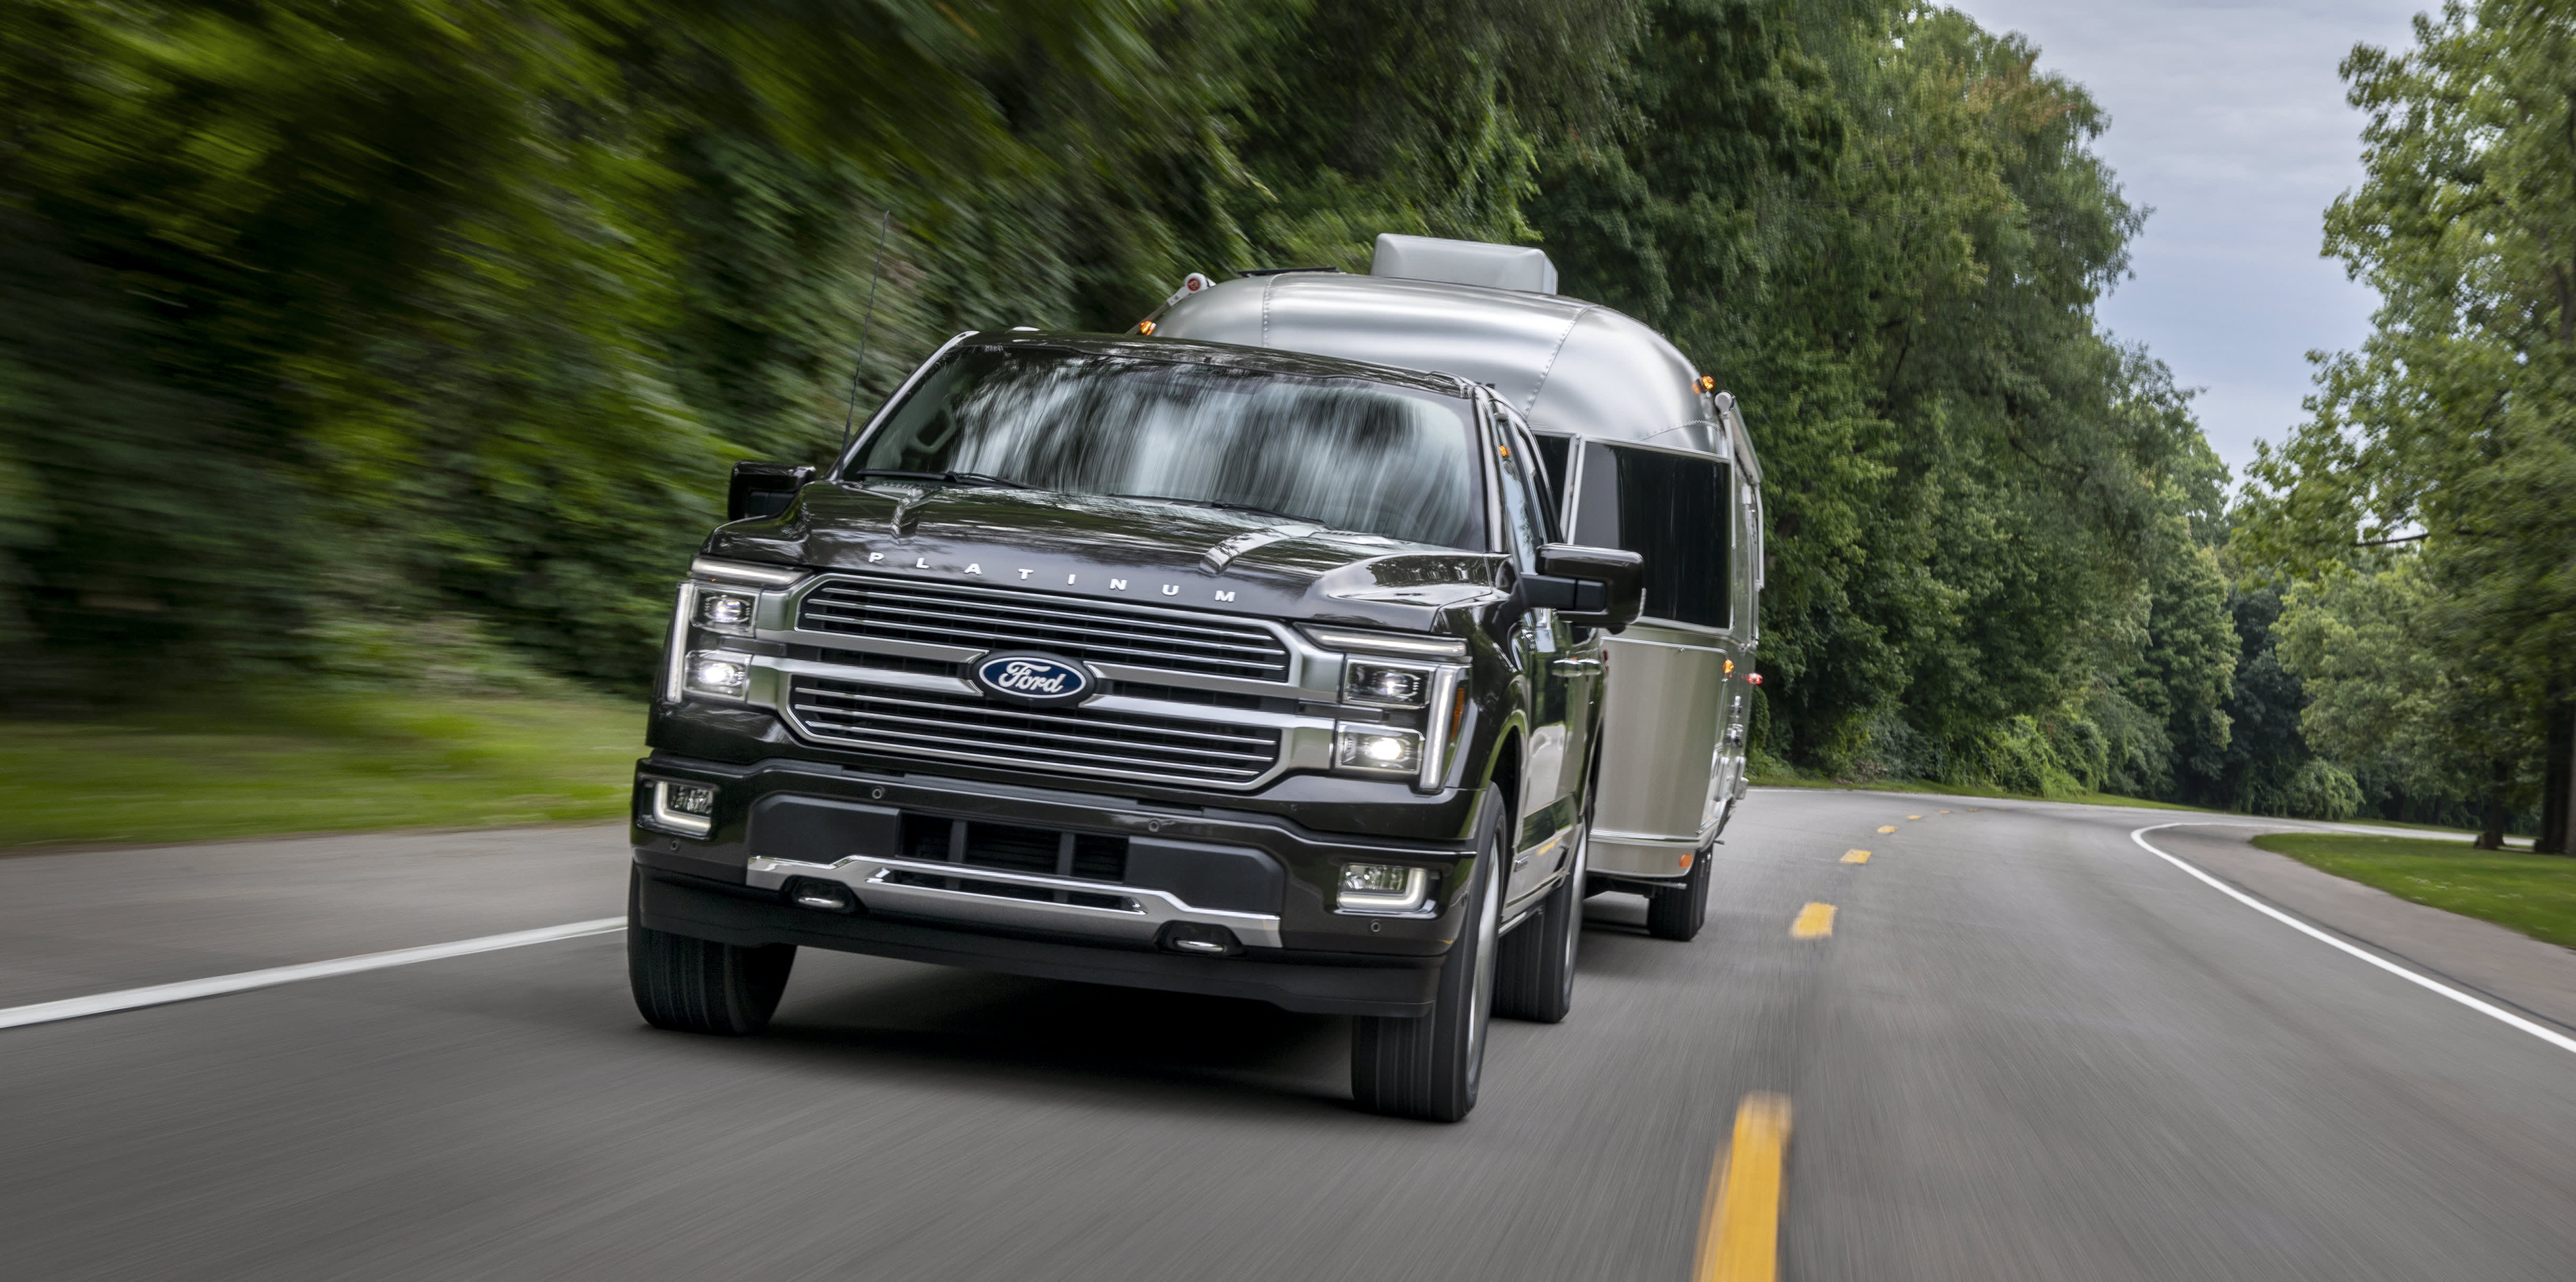 Ford duplica la producción de la camioneta híbrida F-150 a medida que se desacelera el crecimiento de las ventas de vehículos eléctricos